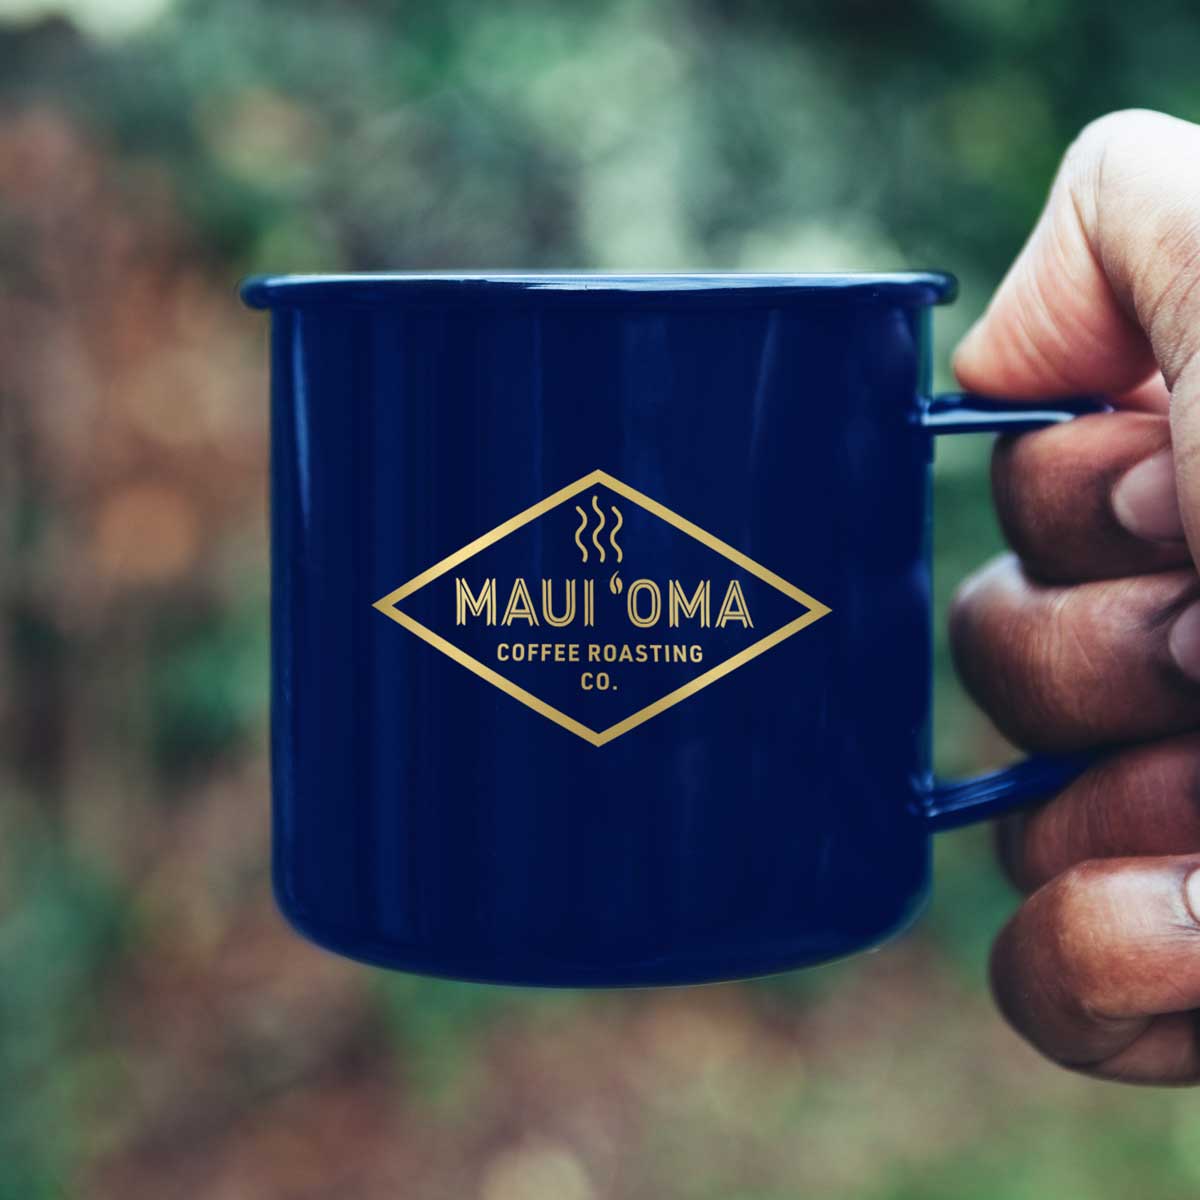 Maui Oma Coffee logo